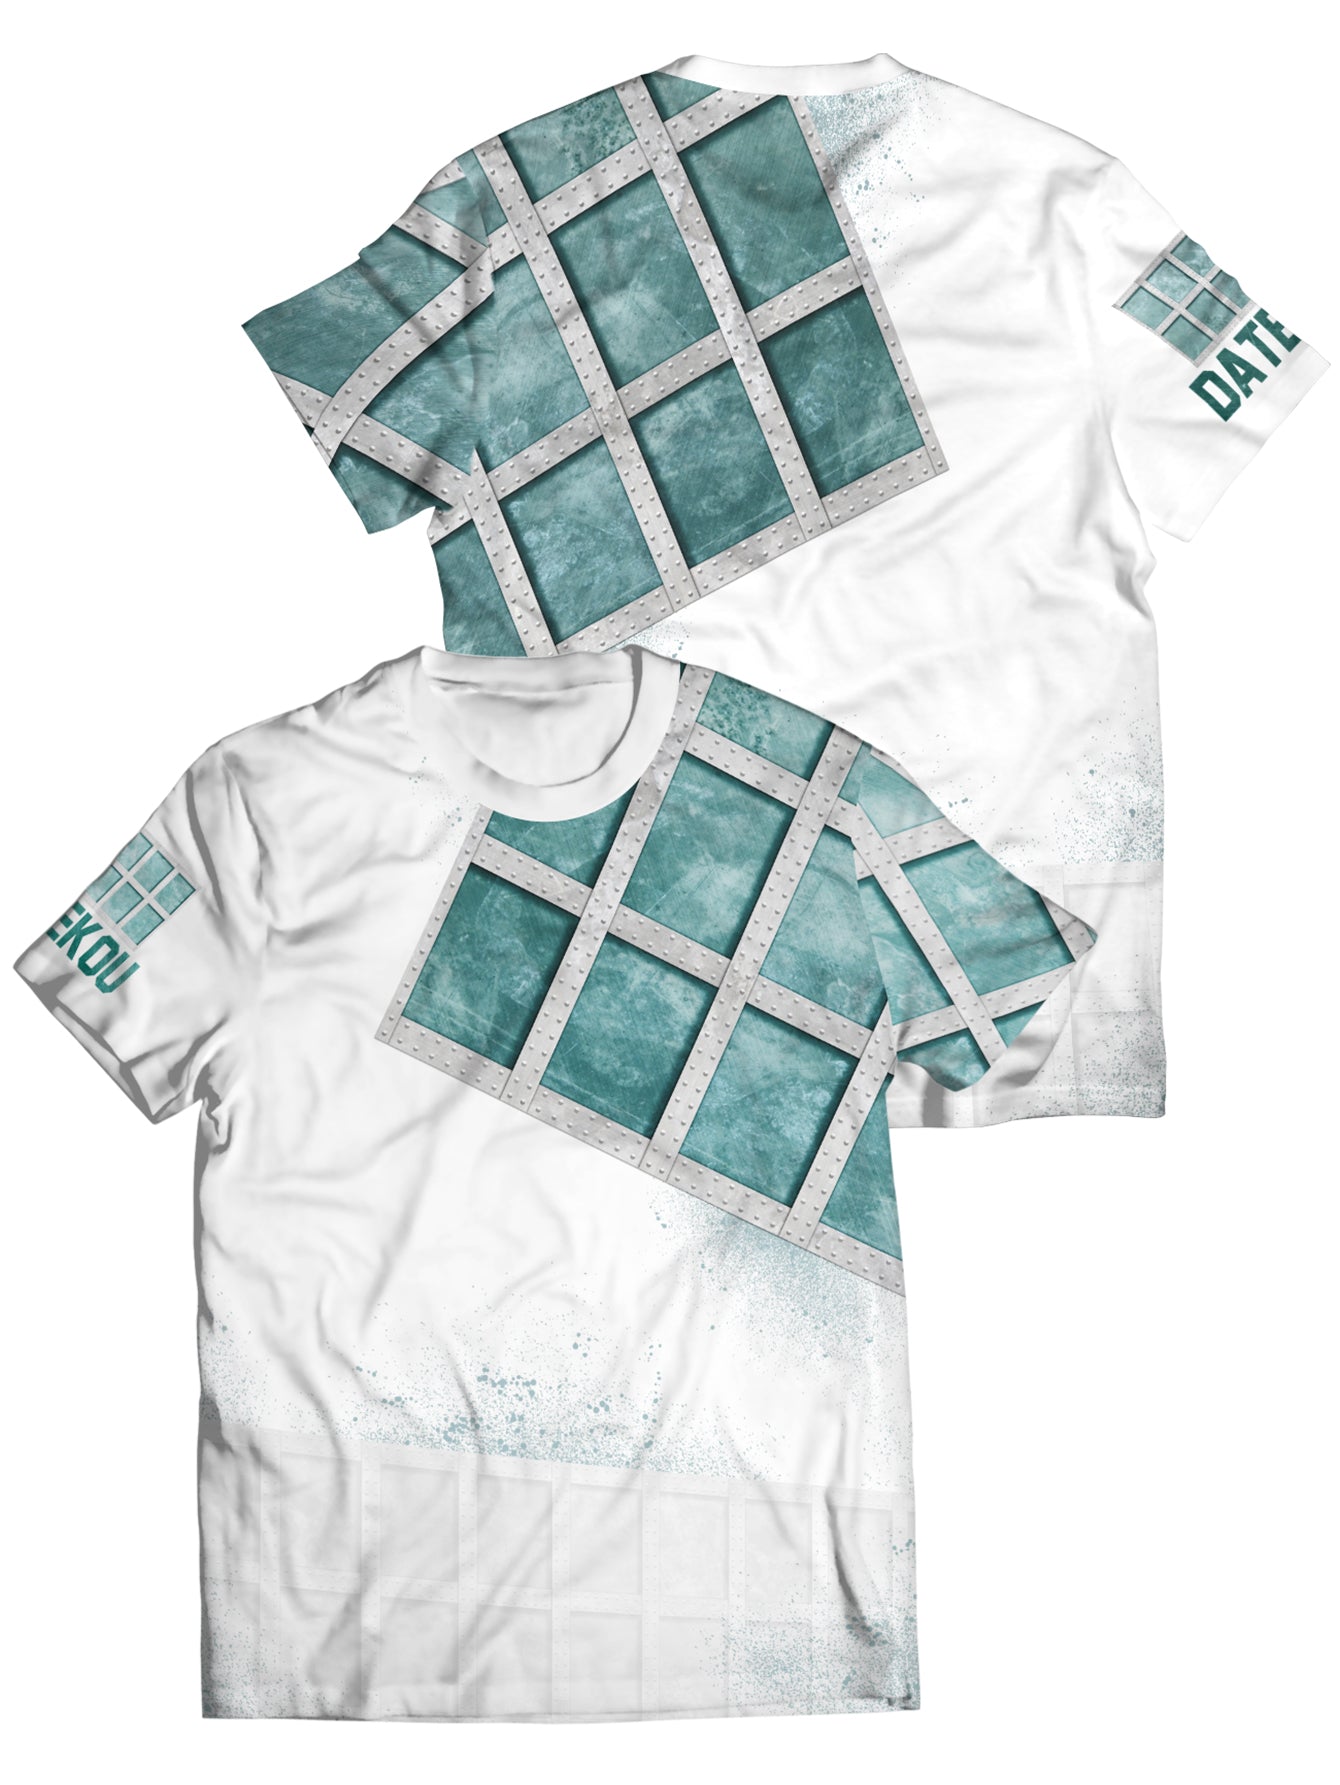 Fandomaniax - Datekou - Iron Wall Unisex T-Shirt